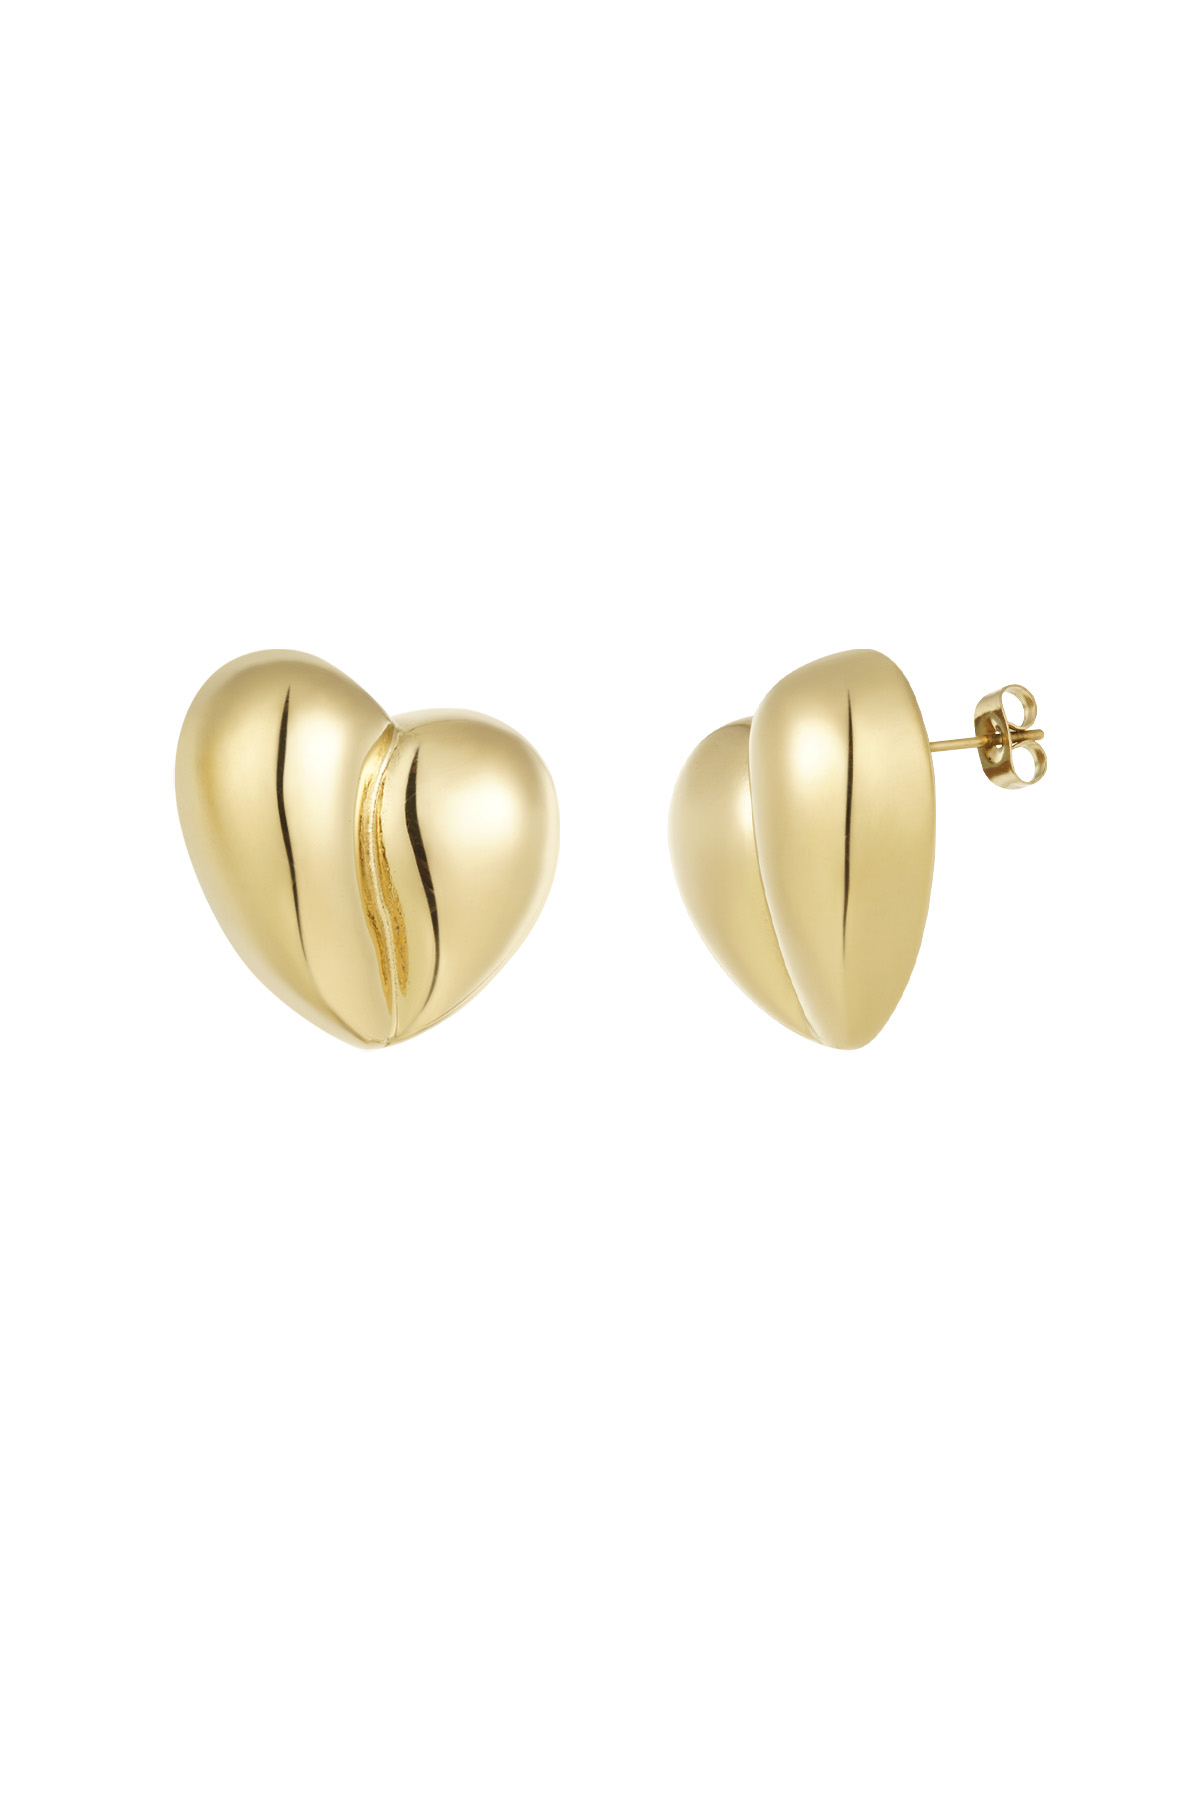 Boucles d'oreilles forme coeur - doré h5 